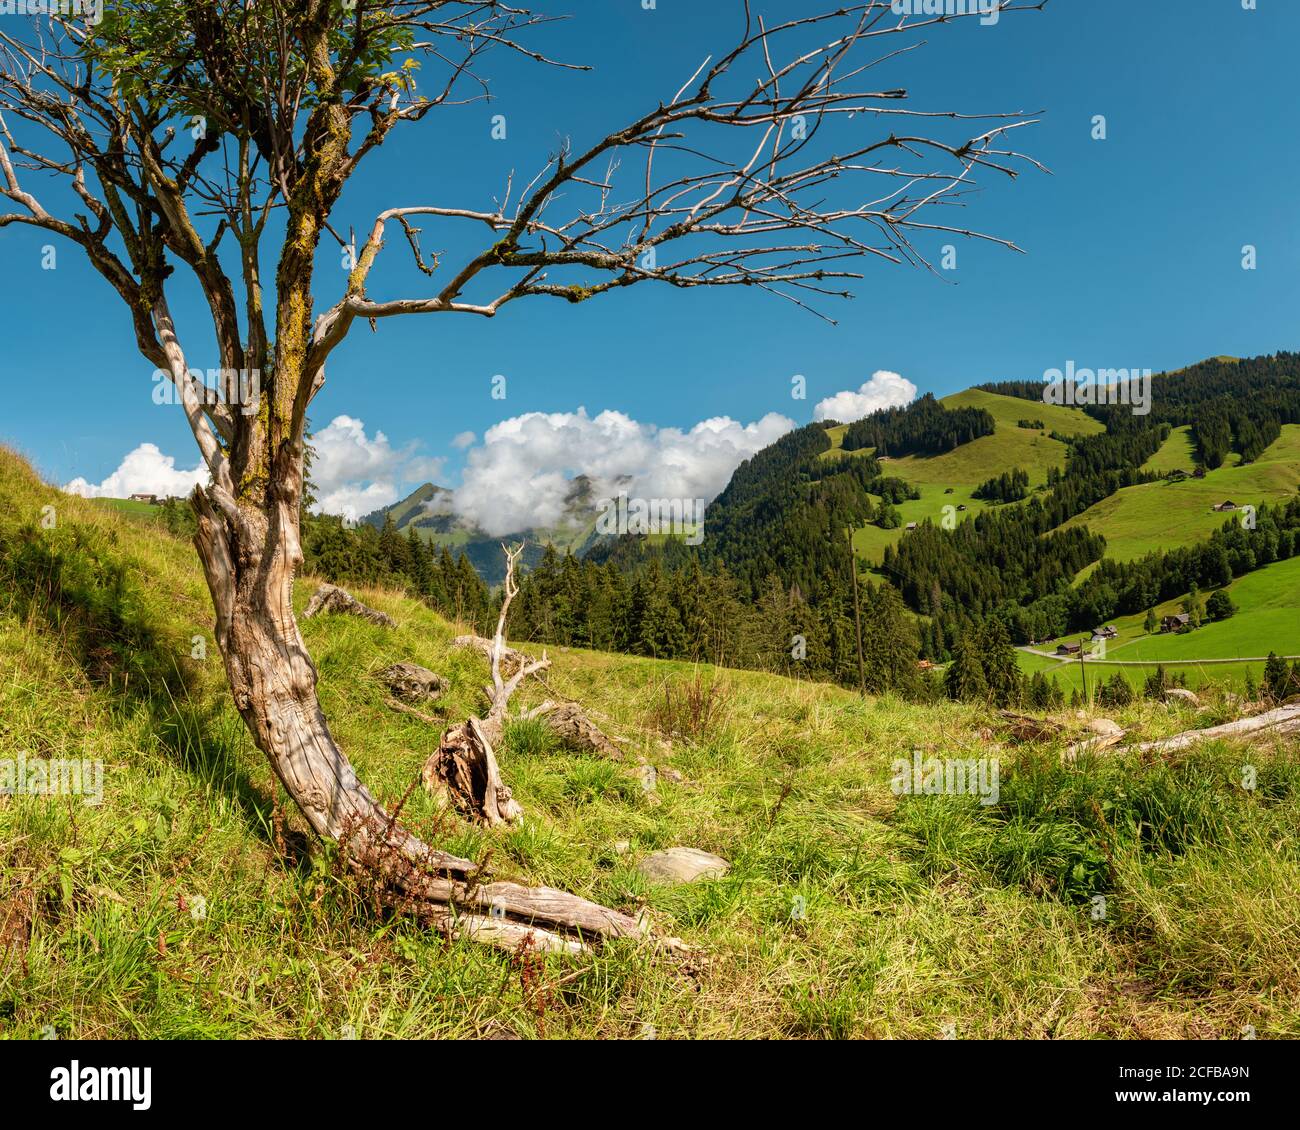 Massif de Gruyere et un arbre, Suisse Banque D'Images